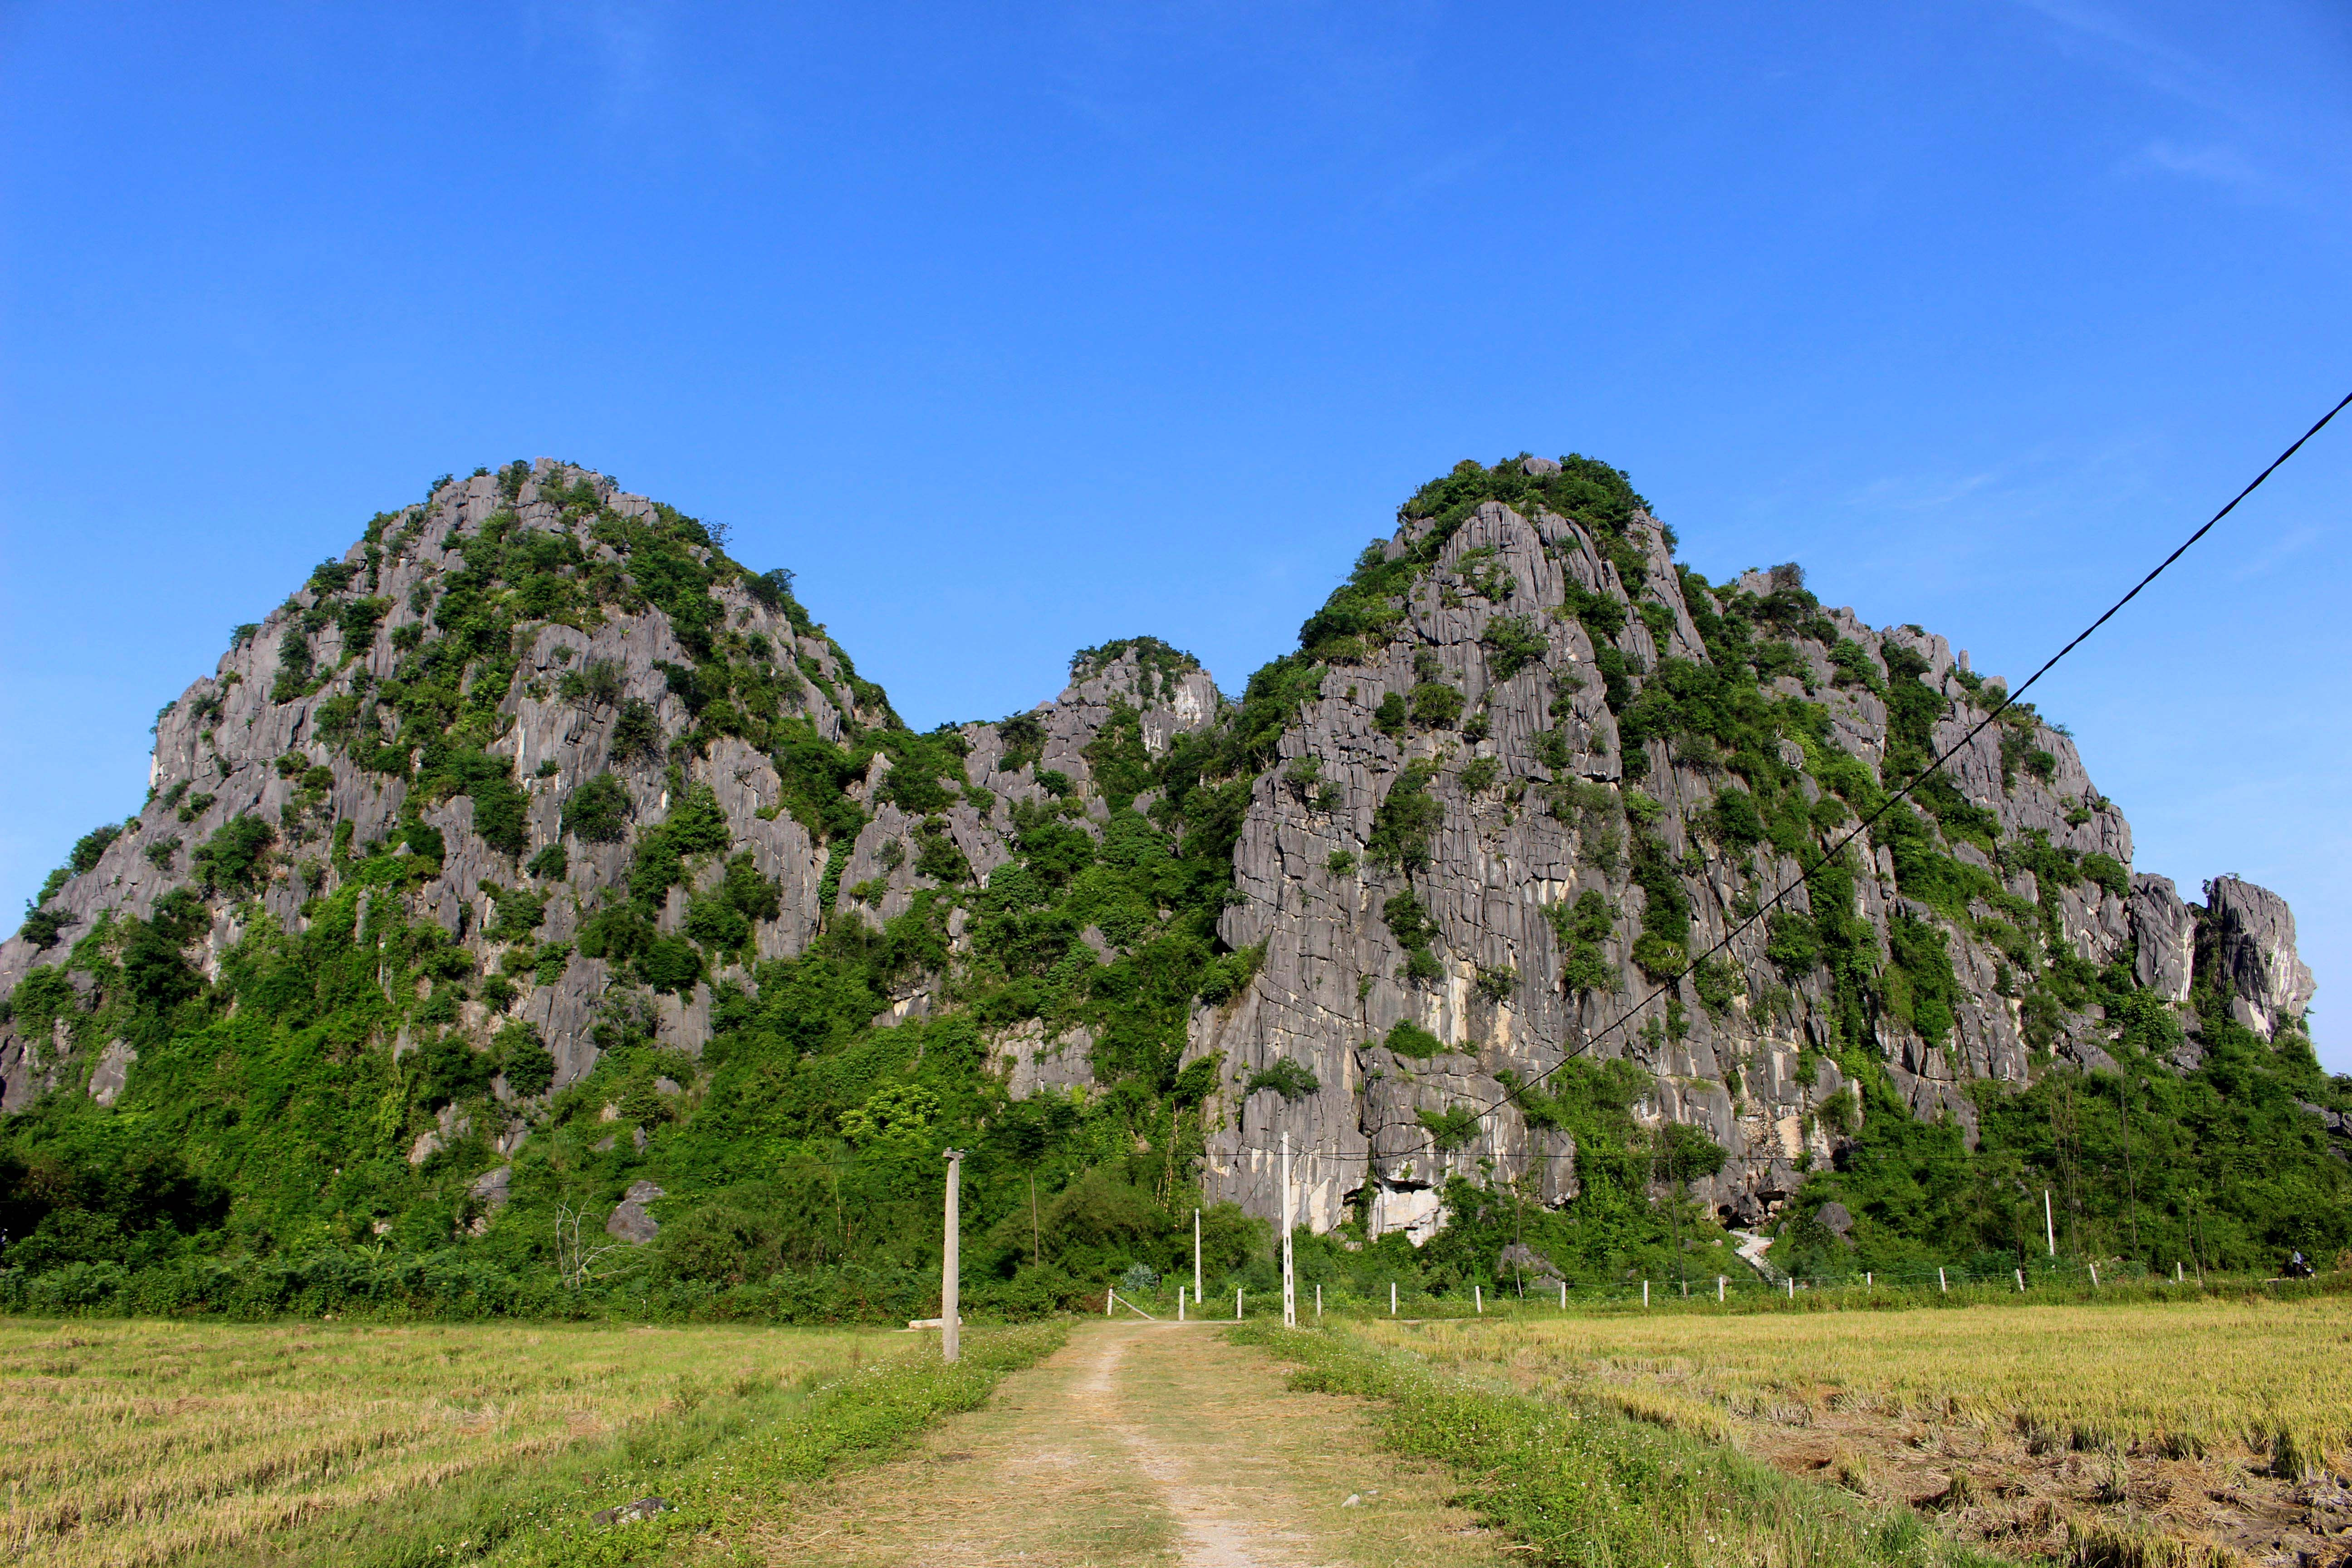 Chùa Thiên Tạo nằm trong lèn Vũ Kỳ ở xã Phúc Thành, huyện Yên Thành là một ngôi chùa cổ độc đáo. Lèn Vũ Kỳ là quần thể núi đá vôi tuyệt đẹp giáp ranh giữa hai xã Đồng Thành và Phúc Thành. 